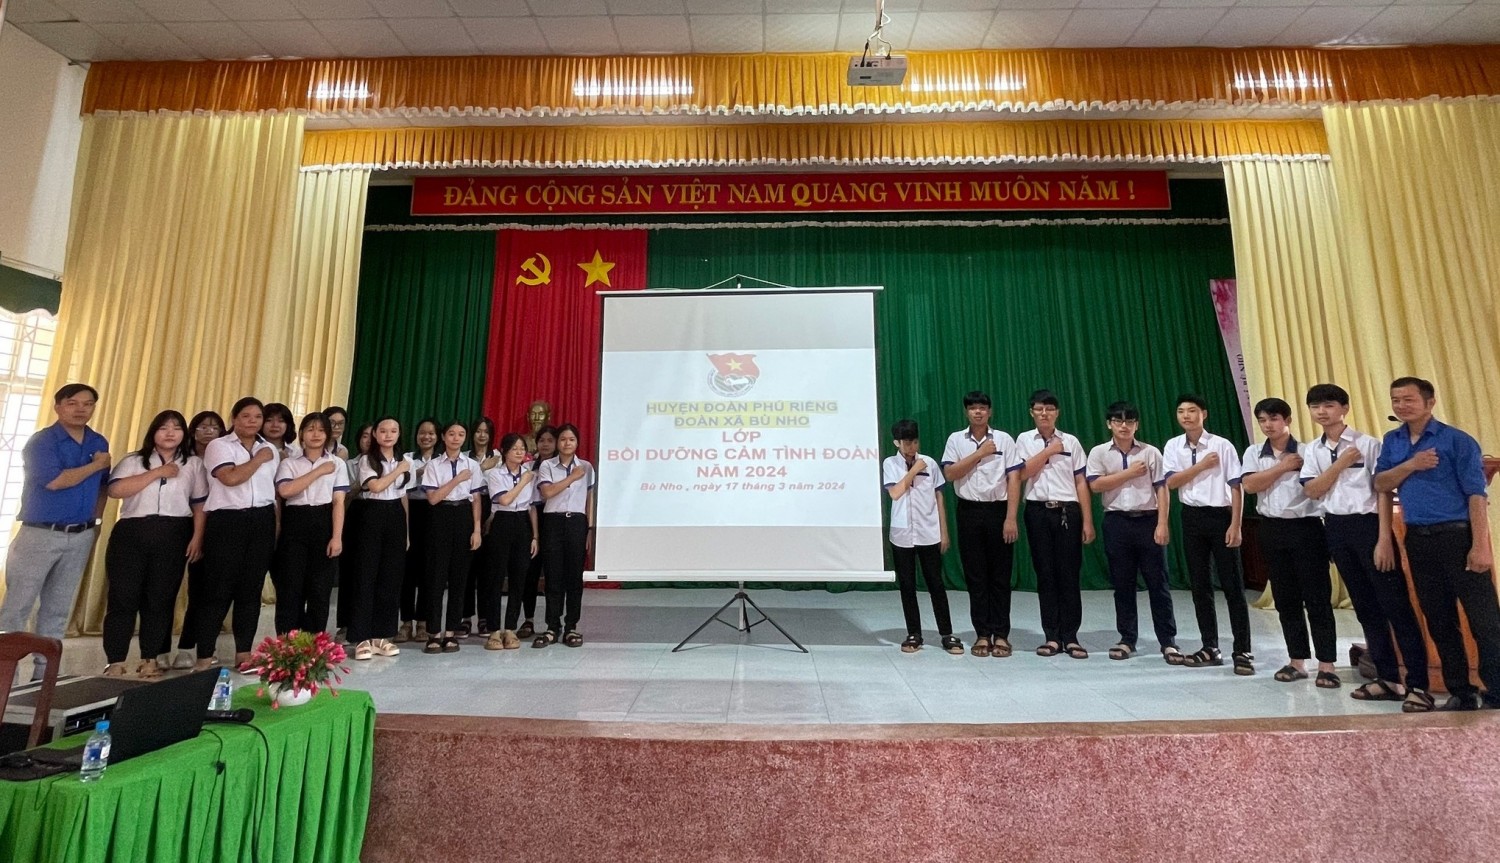 60 học sinh ưu tú được tham gia học lớp cảm tình Đoàn do Ban chấp hành Đoàn xã Bù Nho tổ chức